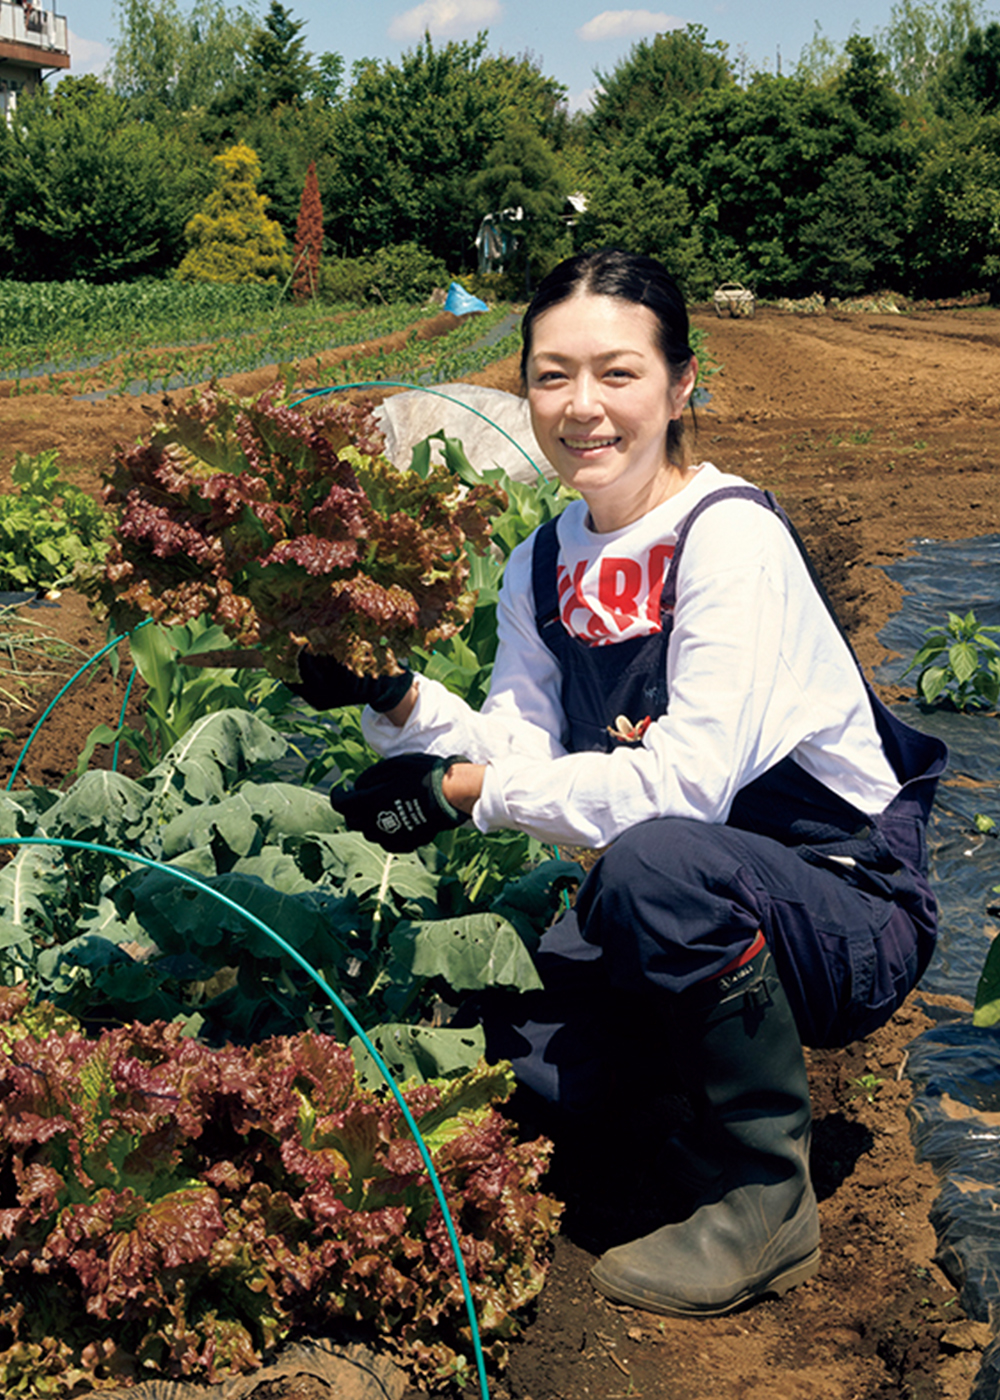 インドア派だった加藤紀子が､10年農作業を続けて思うこと【前編】